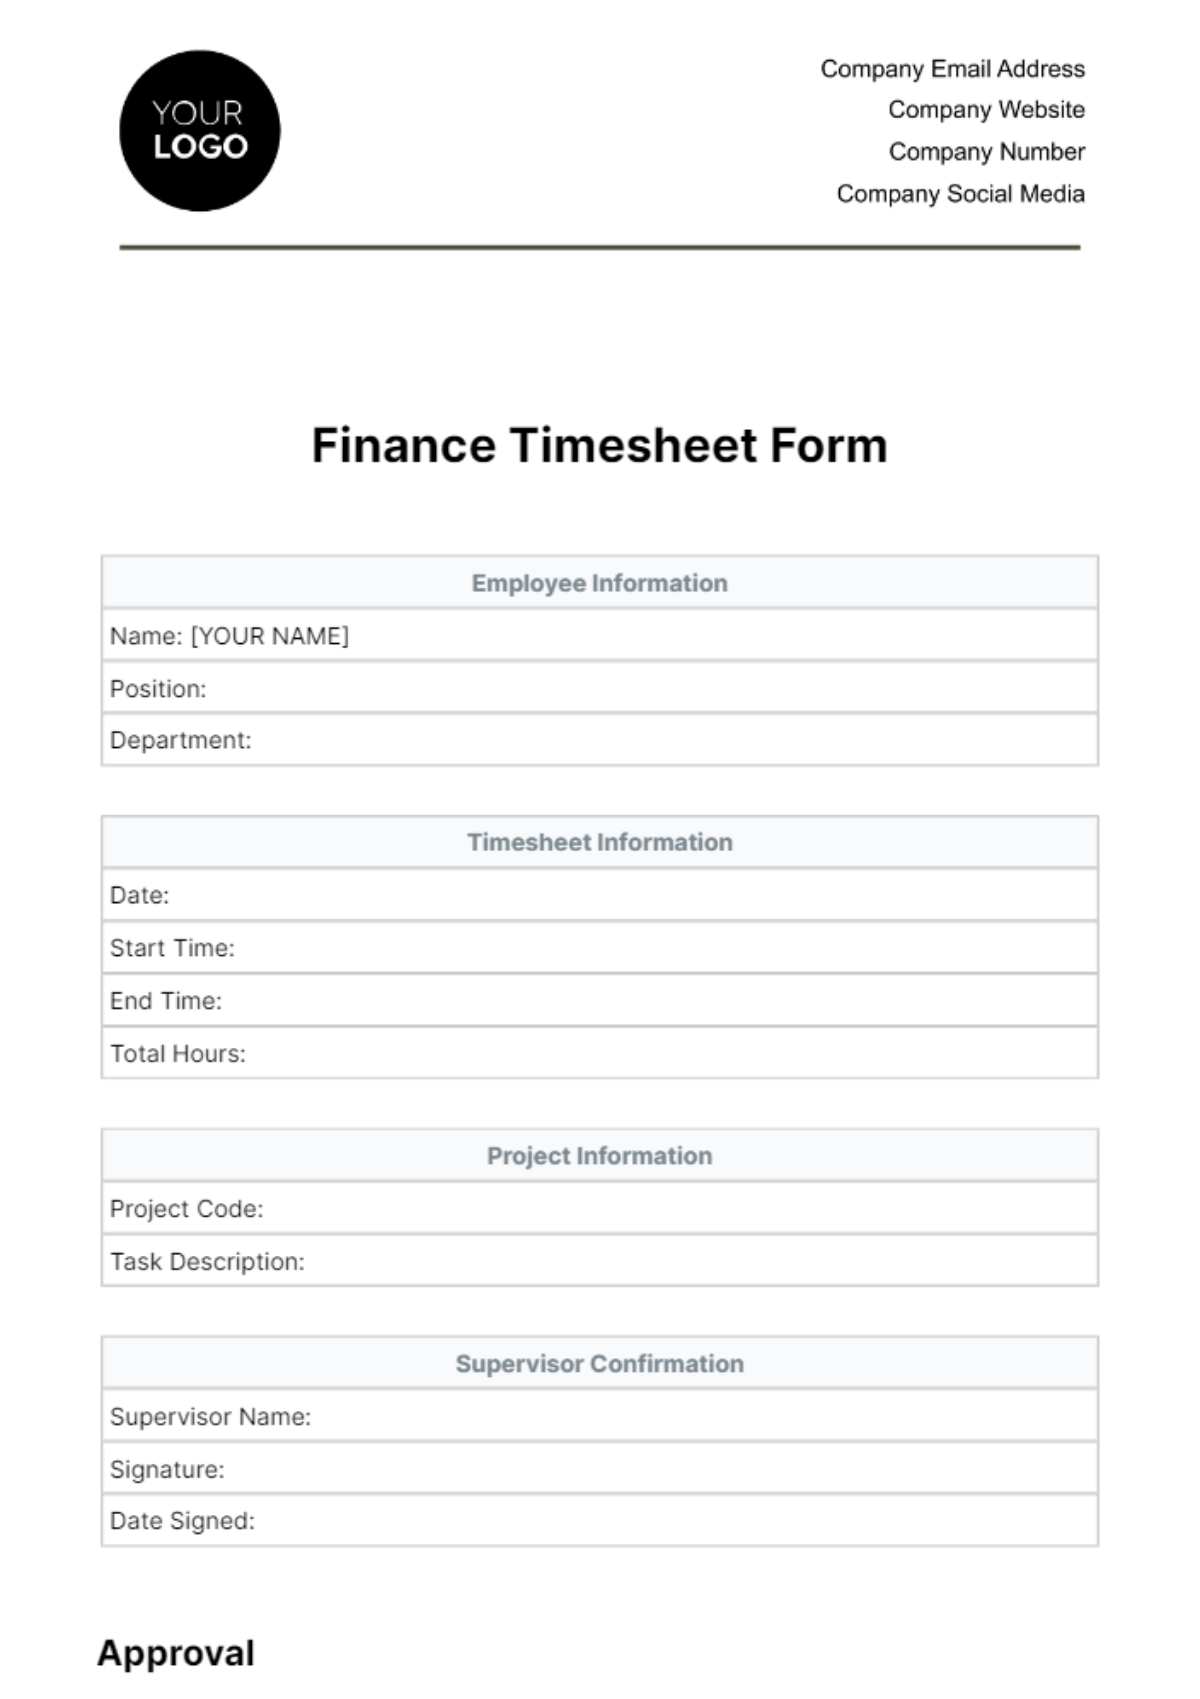 Finance Timesheet Form Template